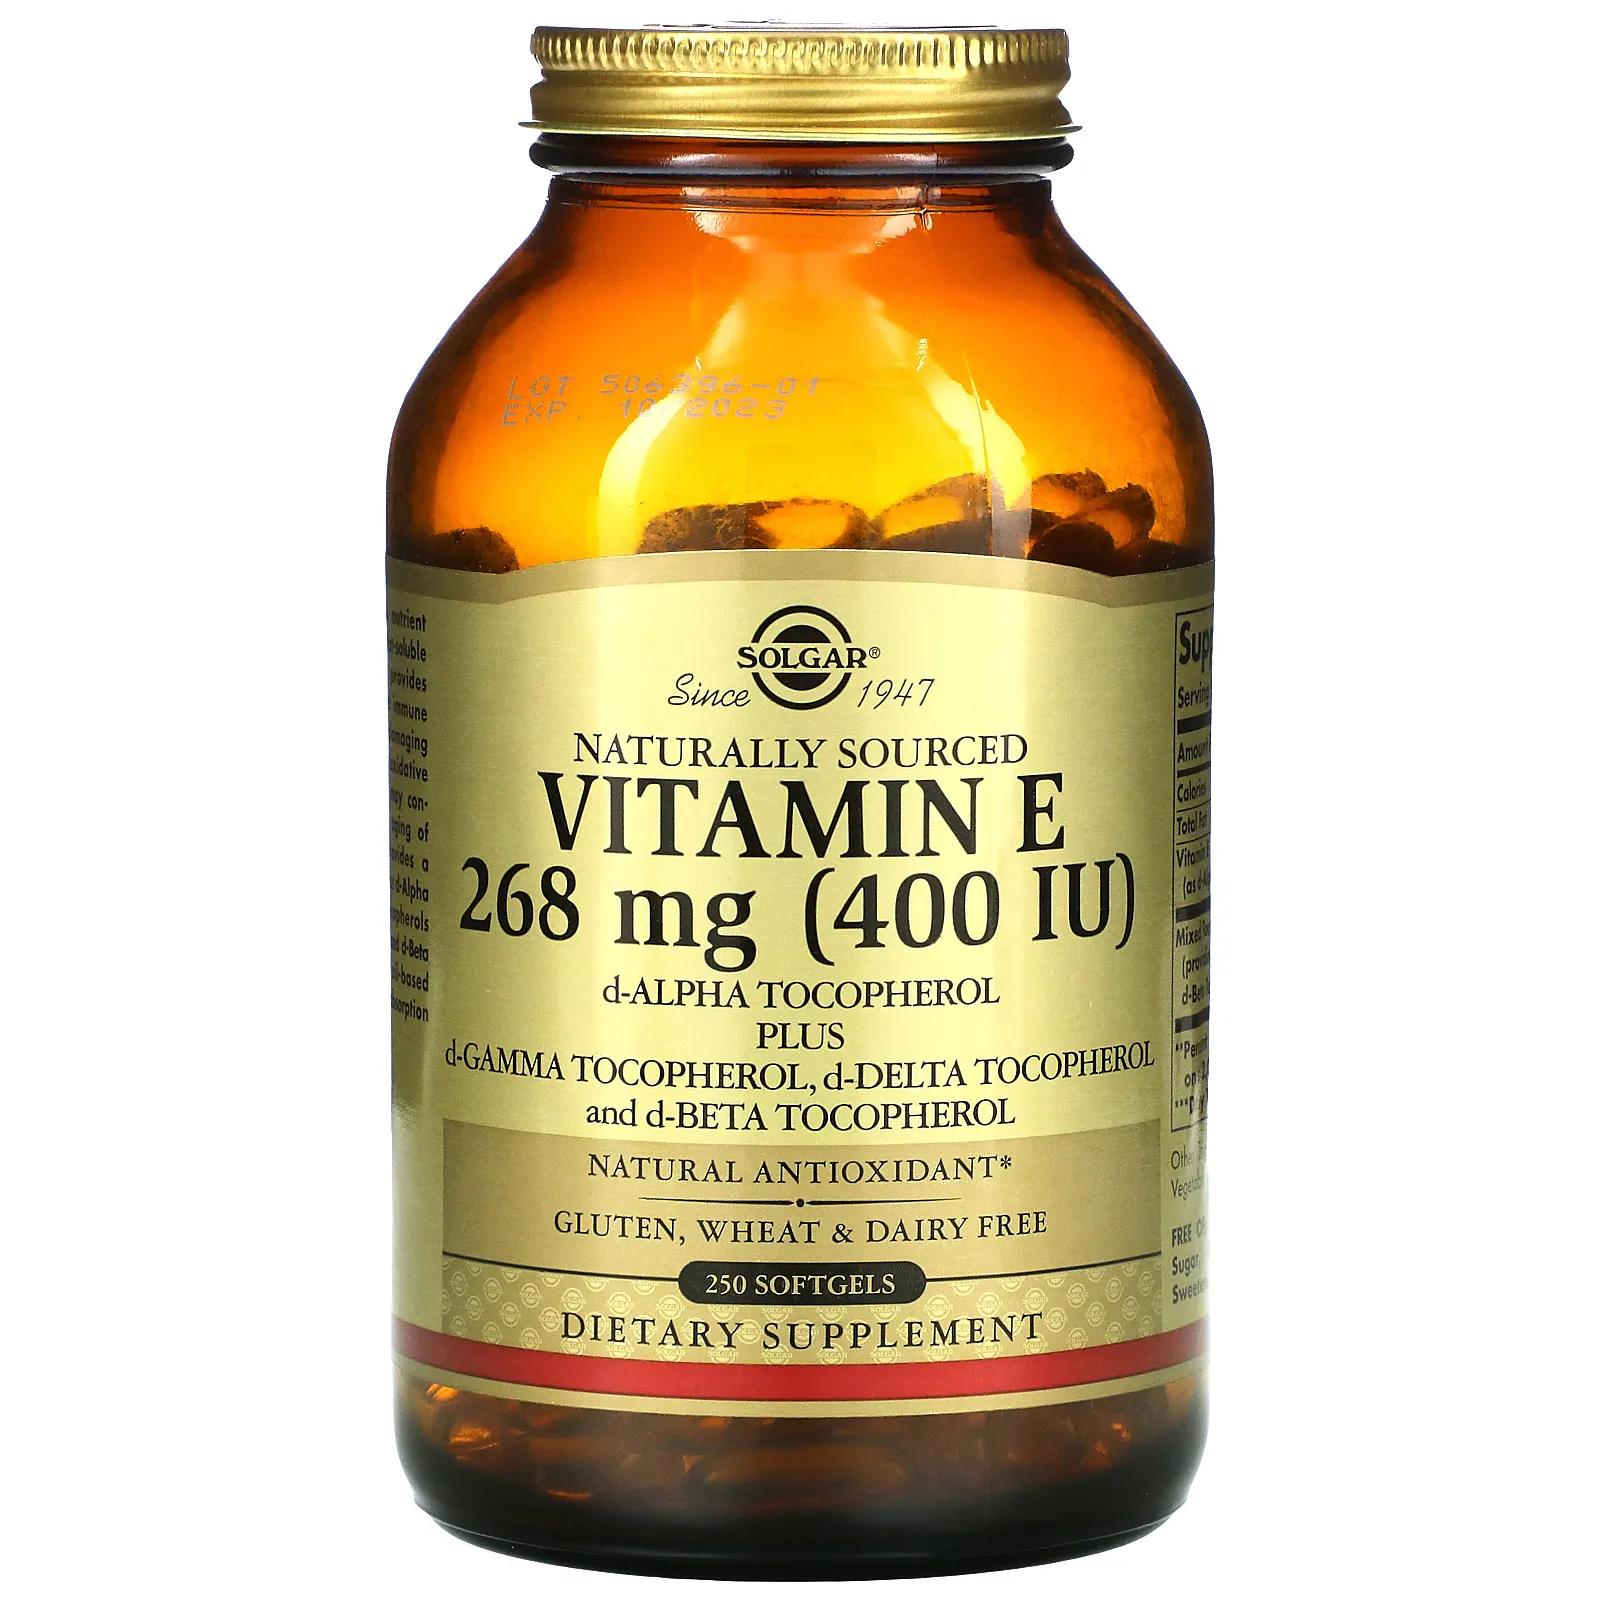 Solgar Витамин E натурального происхождения 400 МЕ 250 мягких таблеток solgar витамин е природного происхождения 268 мг 400 ме 250 мягких желатиновых капсул